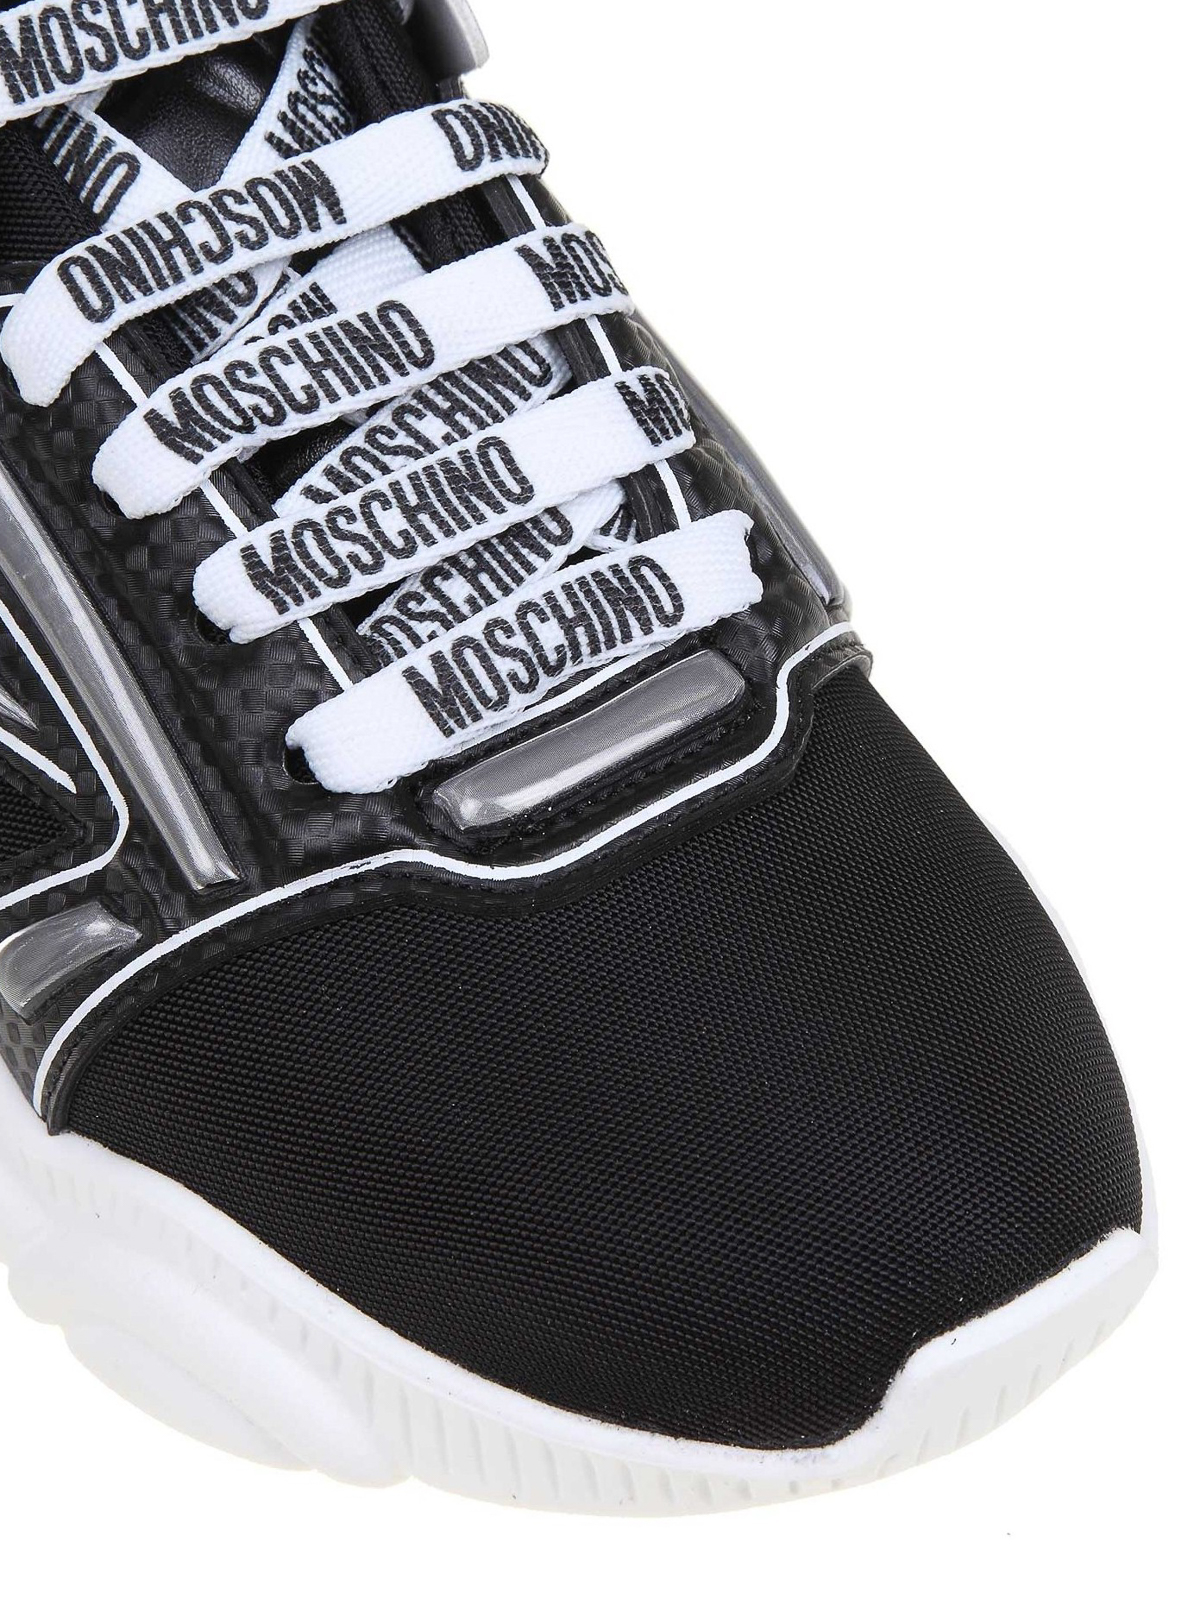 Baskets montantes à logo Moschino pour homme en coloris Noir Homme Chaussures Baskets Baskets montantes 